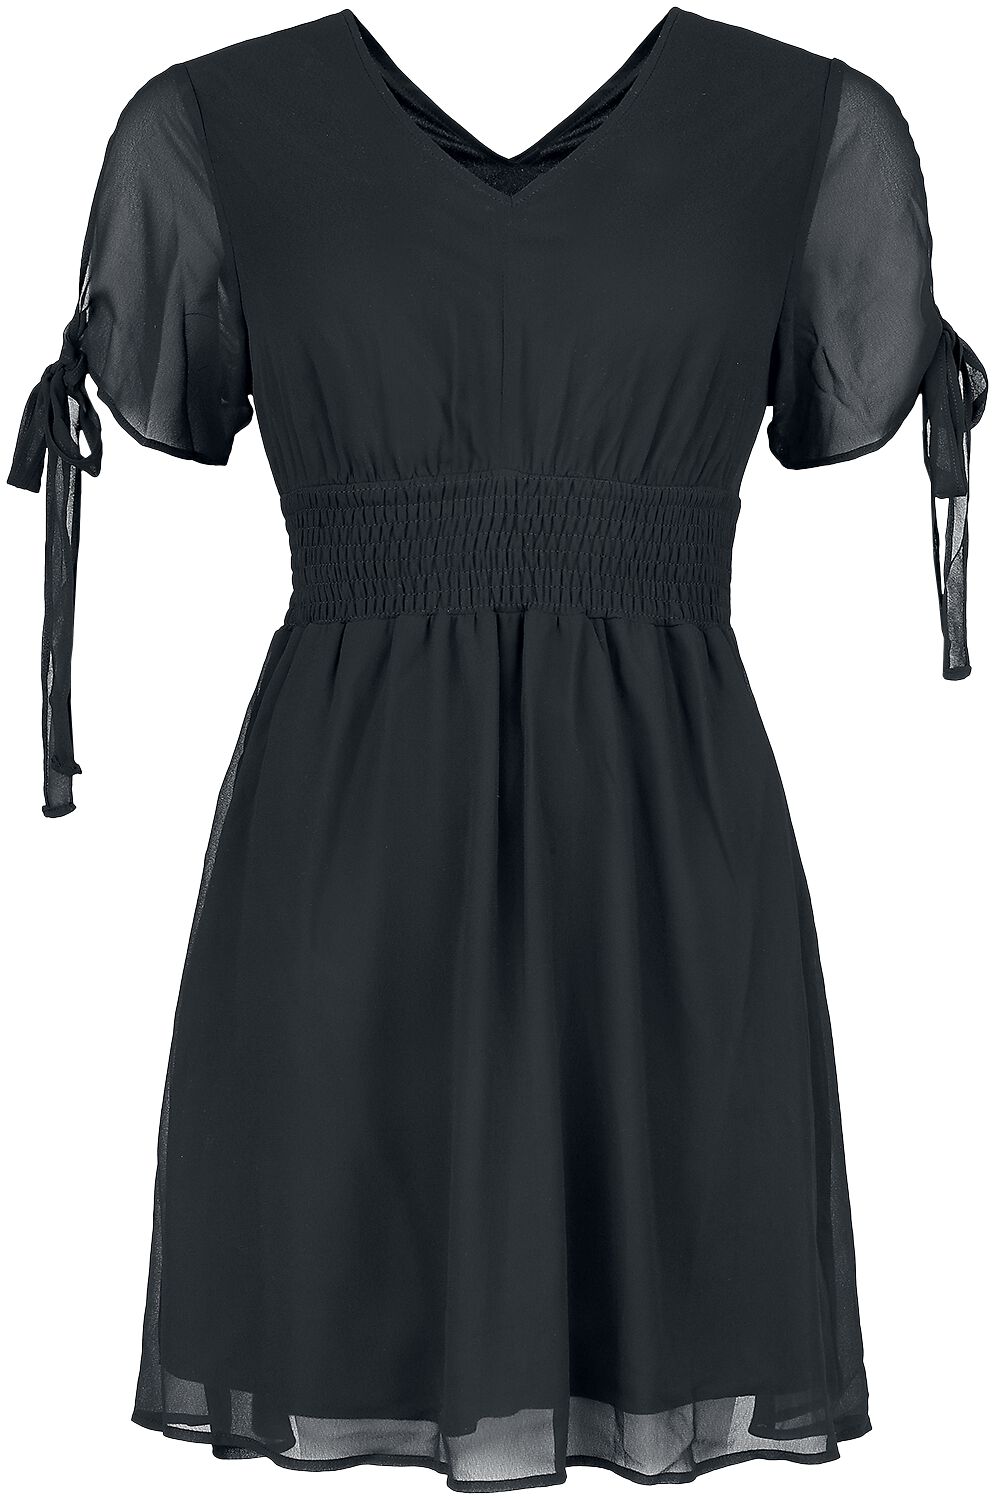 Image of Miniabito Gothic di Innocent - Carme dress - S a 4XL - Donna - nero